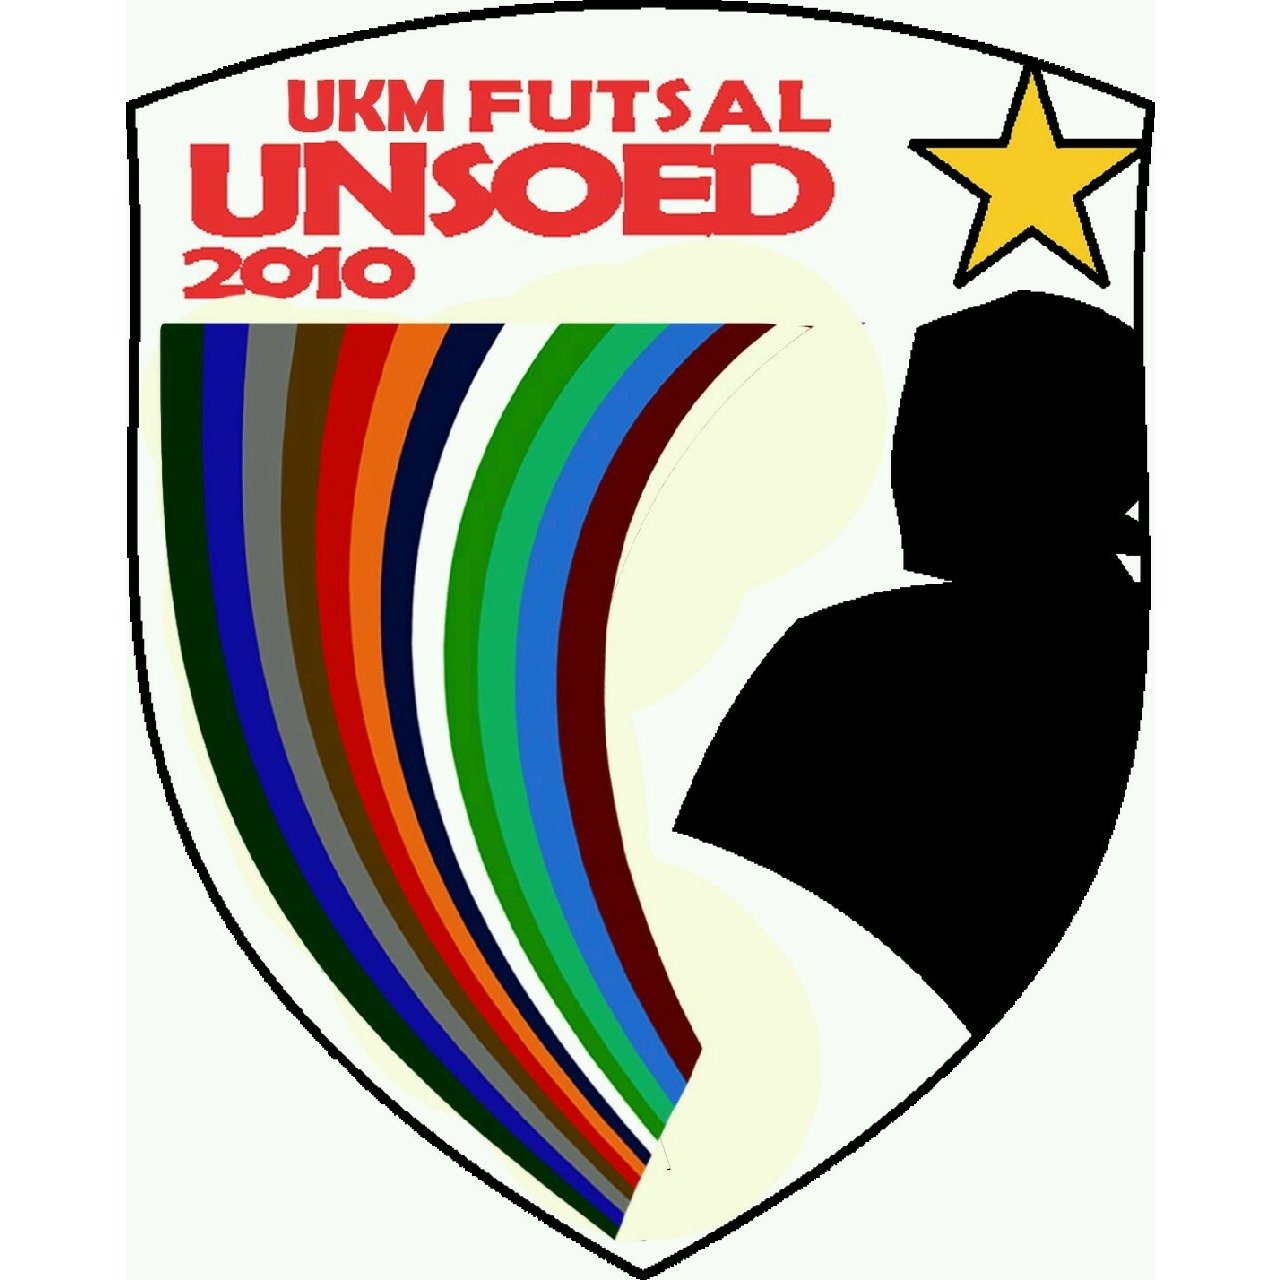 UKM Futsal Unsoed